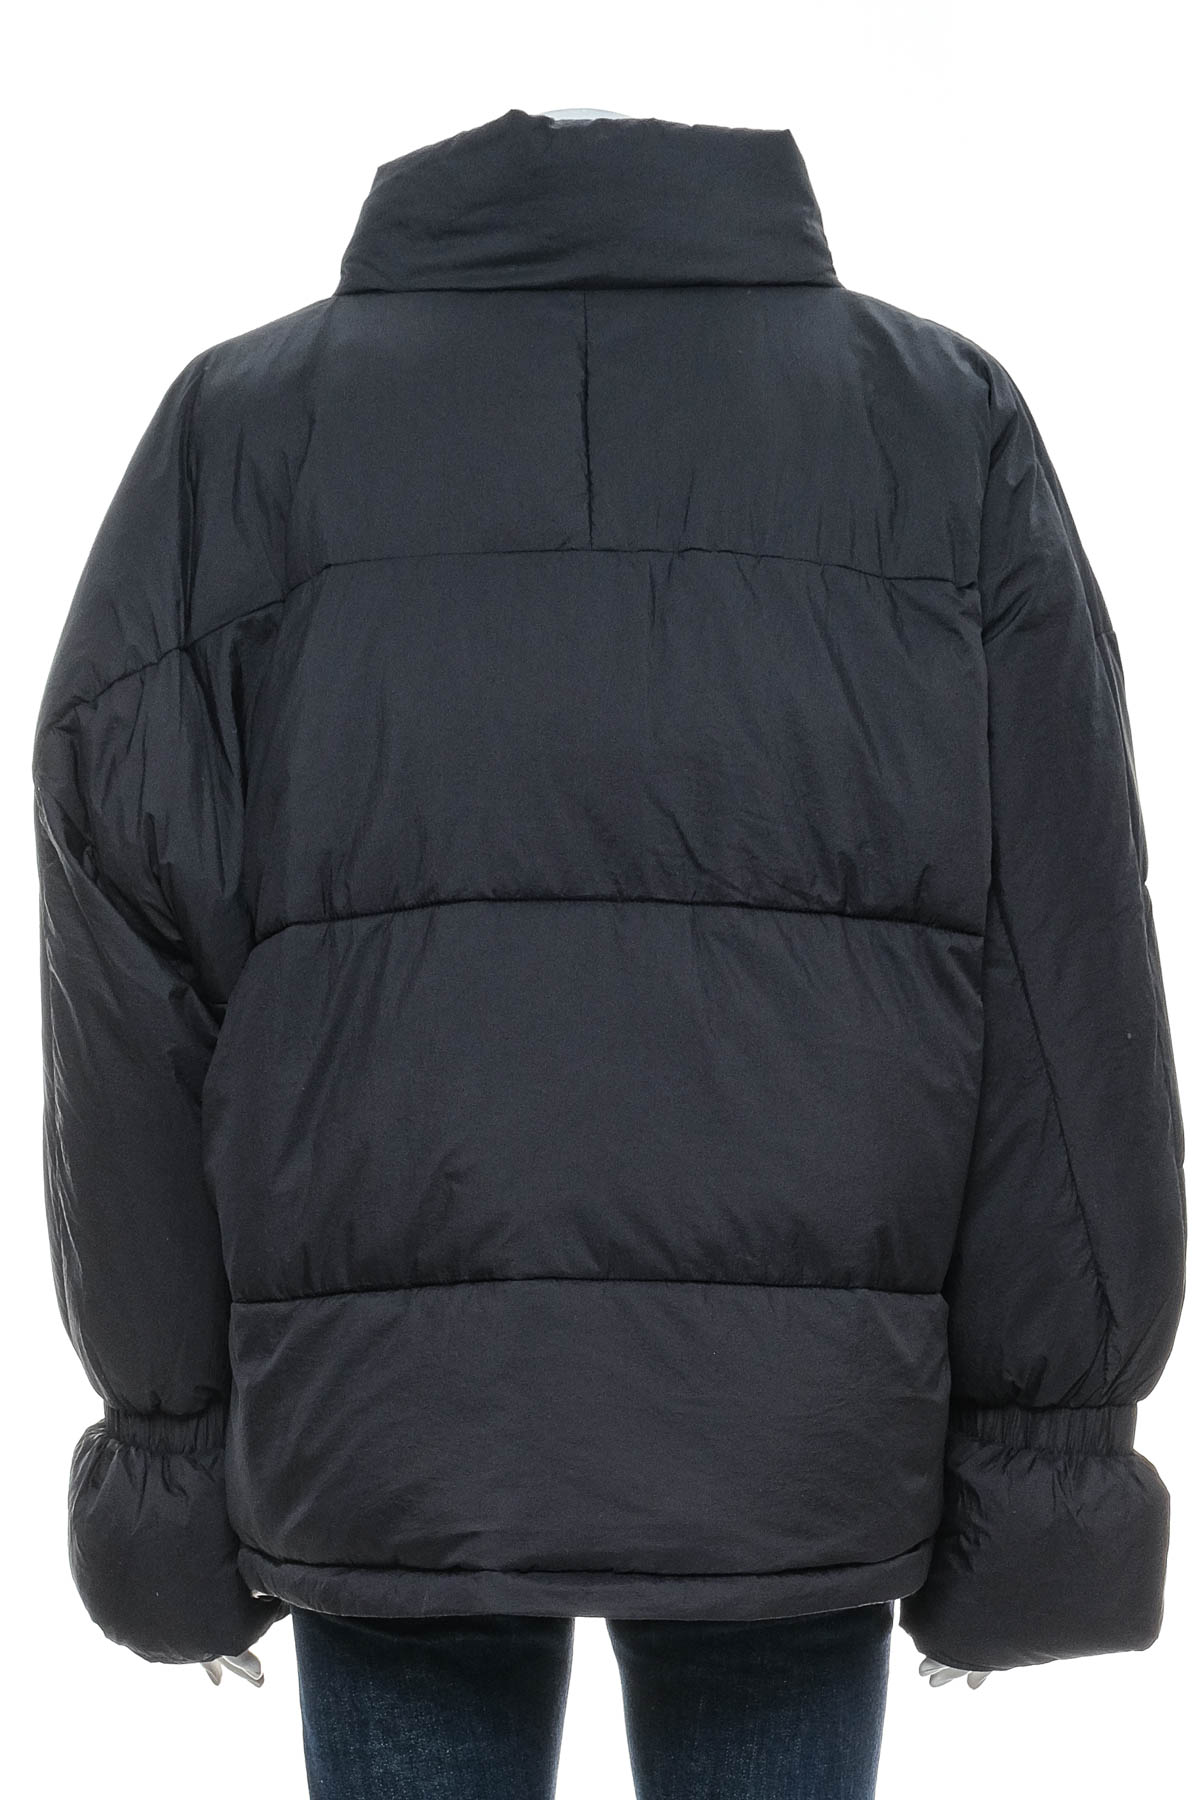 Female jacket - NA-KD - 1